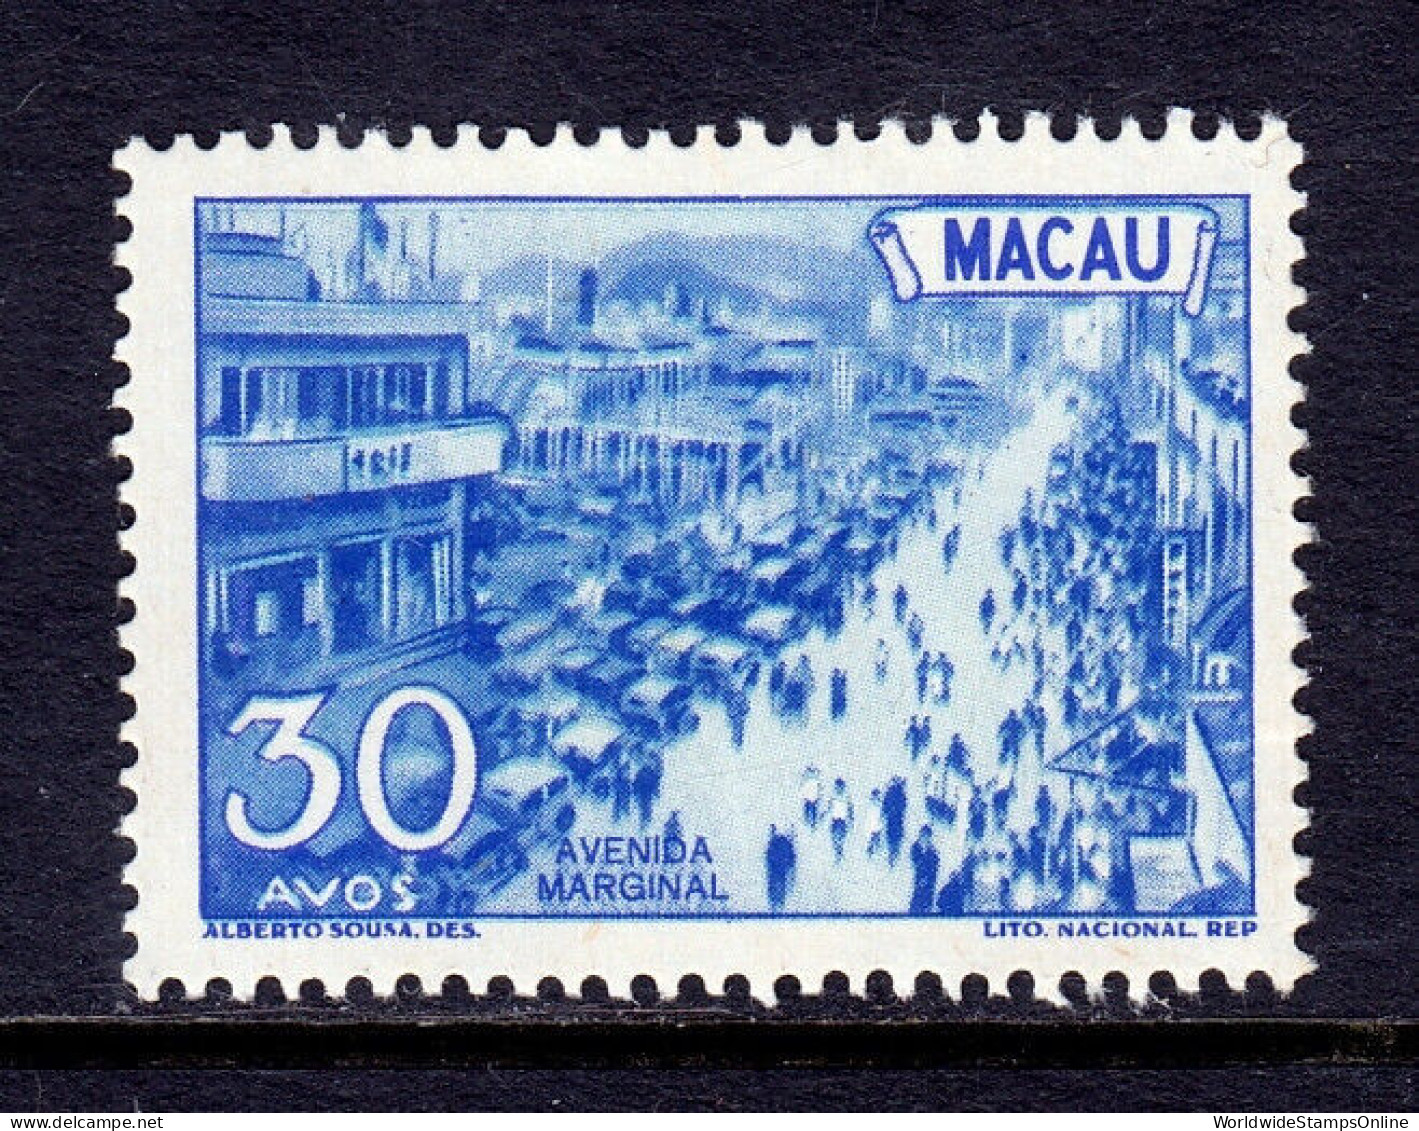 MACAO — SCOTT 346 —  1950 30a MARGINAL AVE PICTORIAL — MH — SCV $28 - Ungebraucht